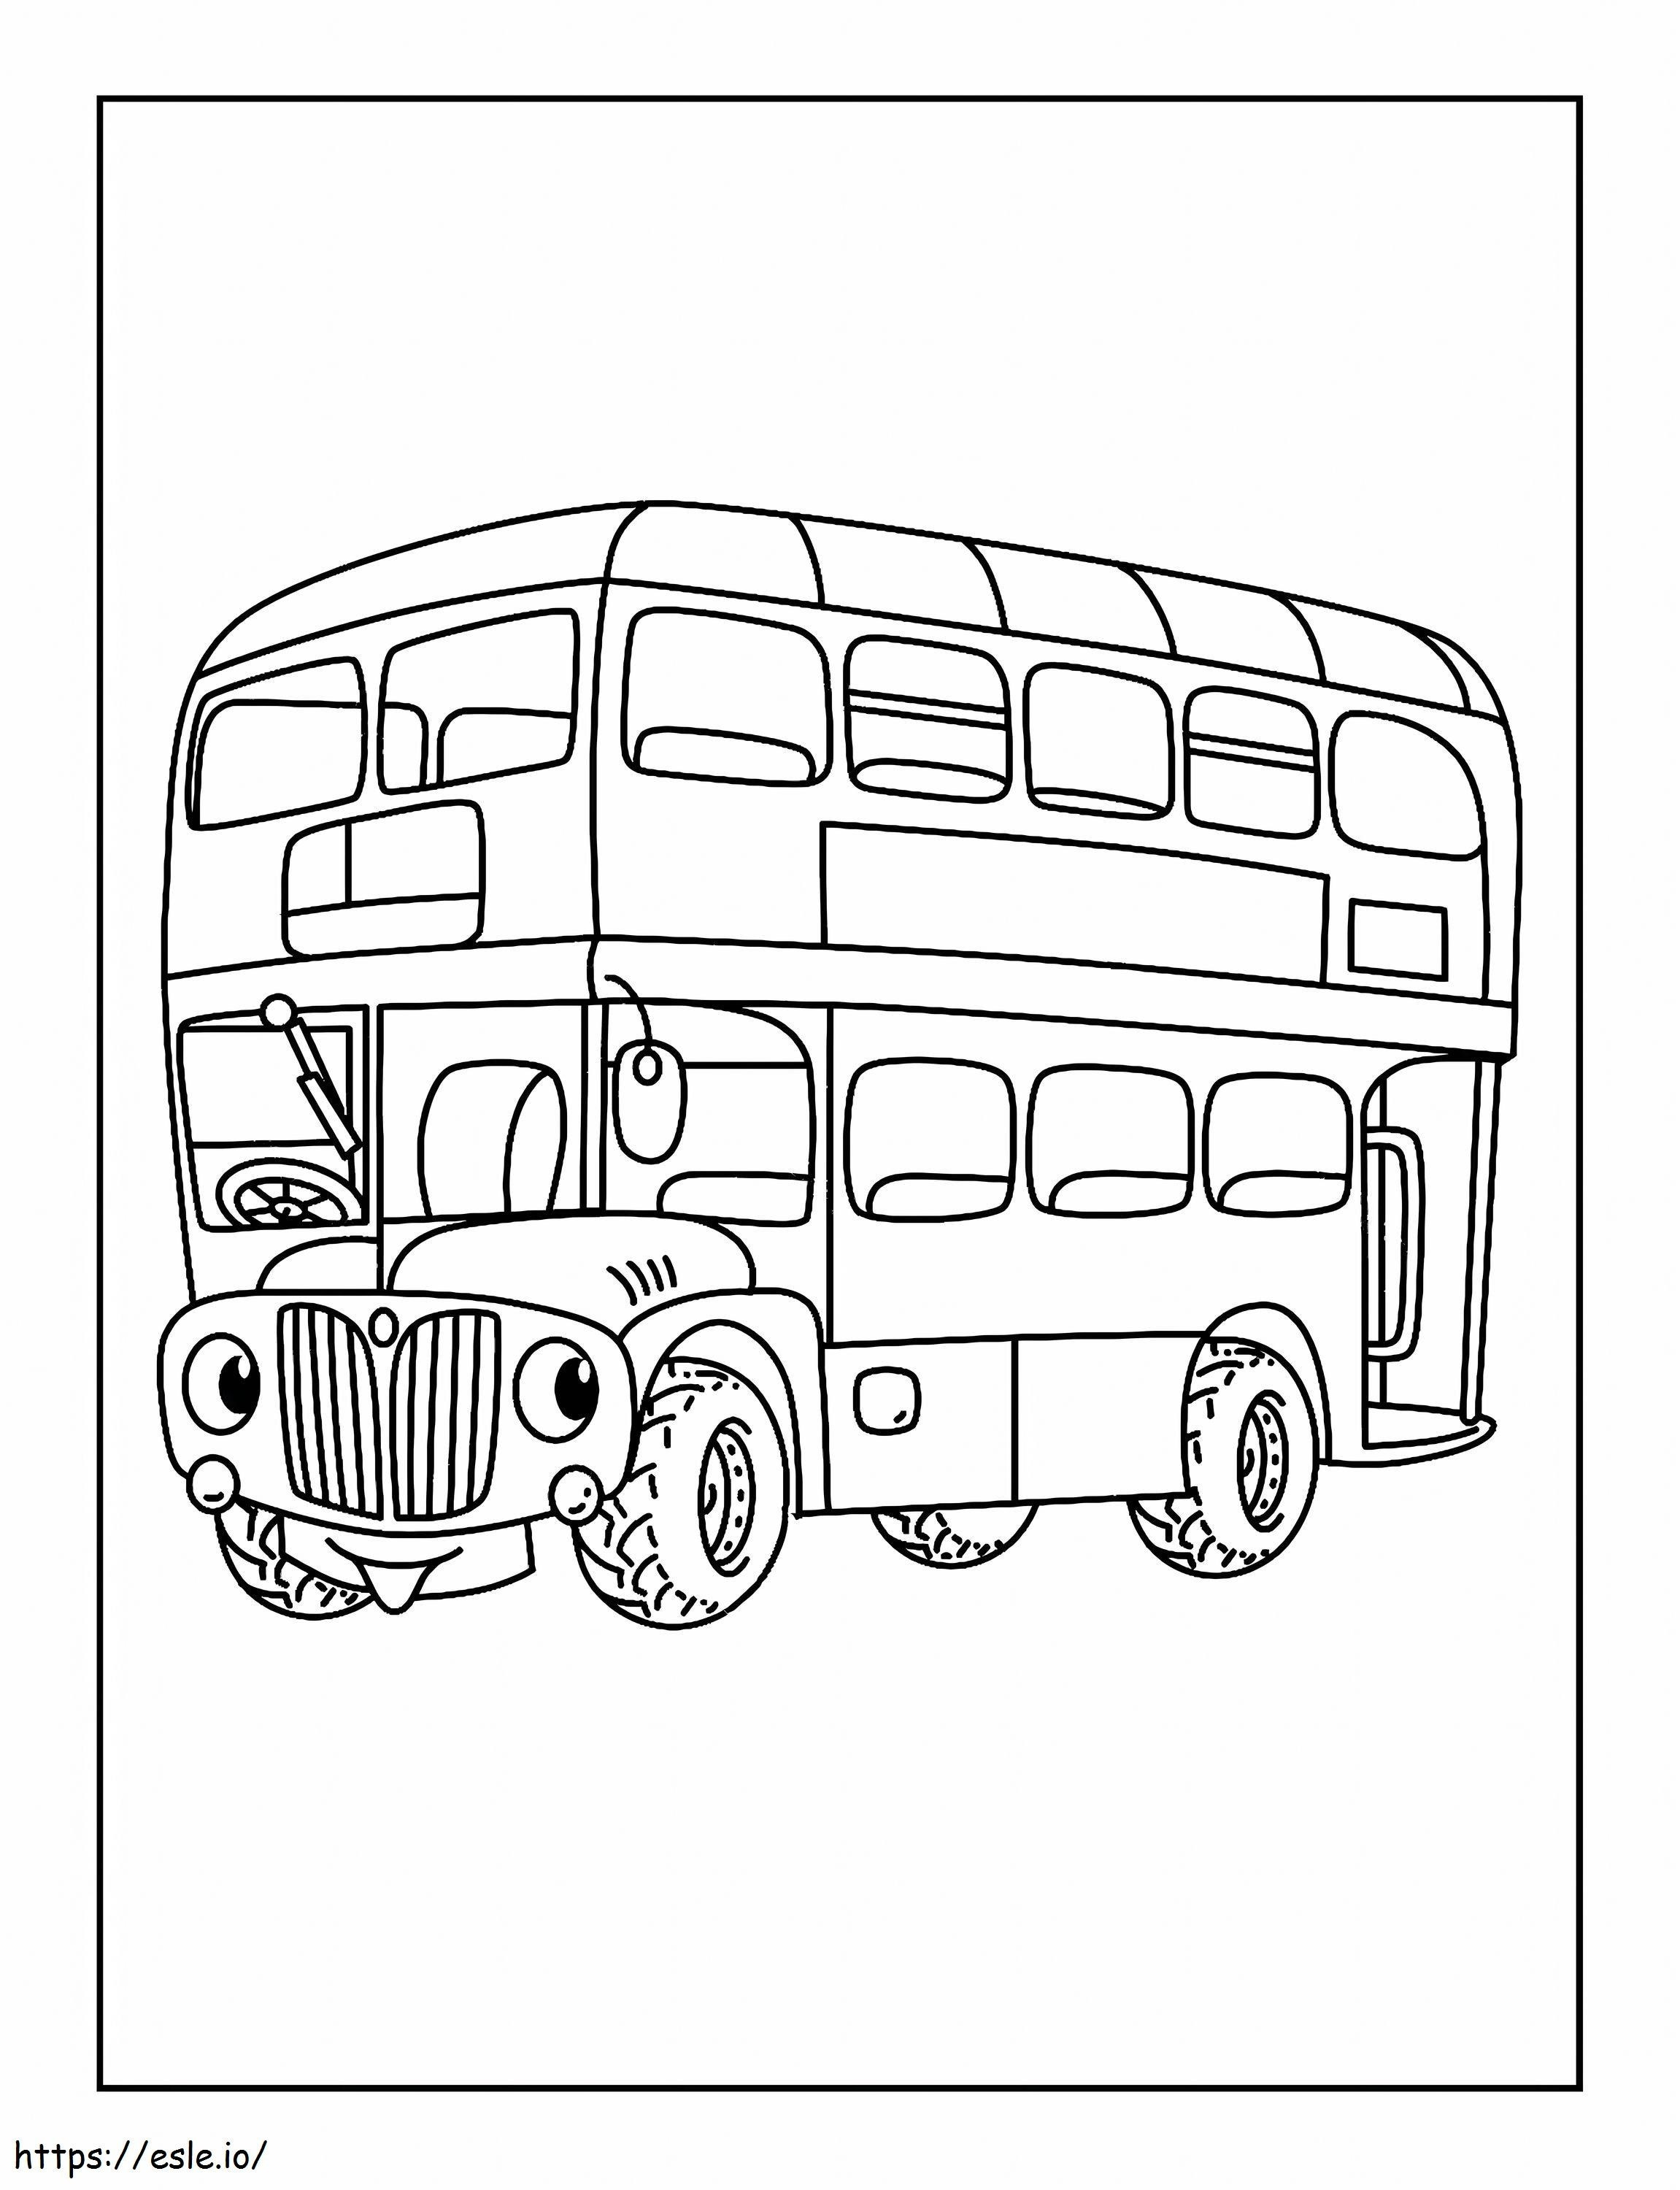 Cartone animato di autobus in scala da colorare